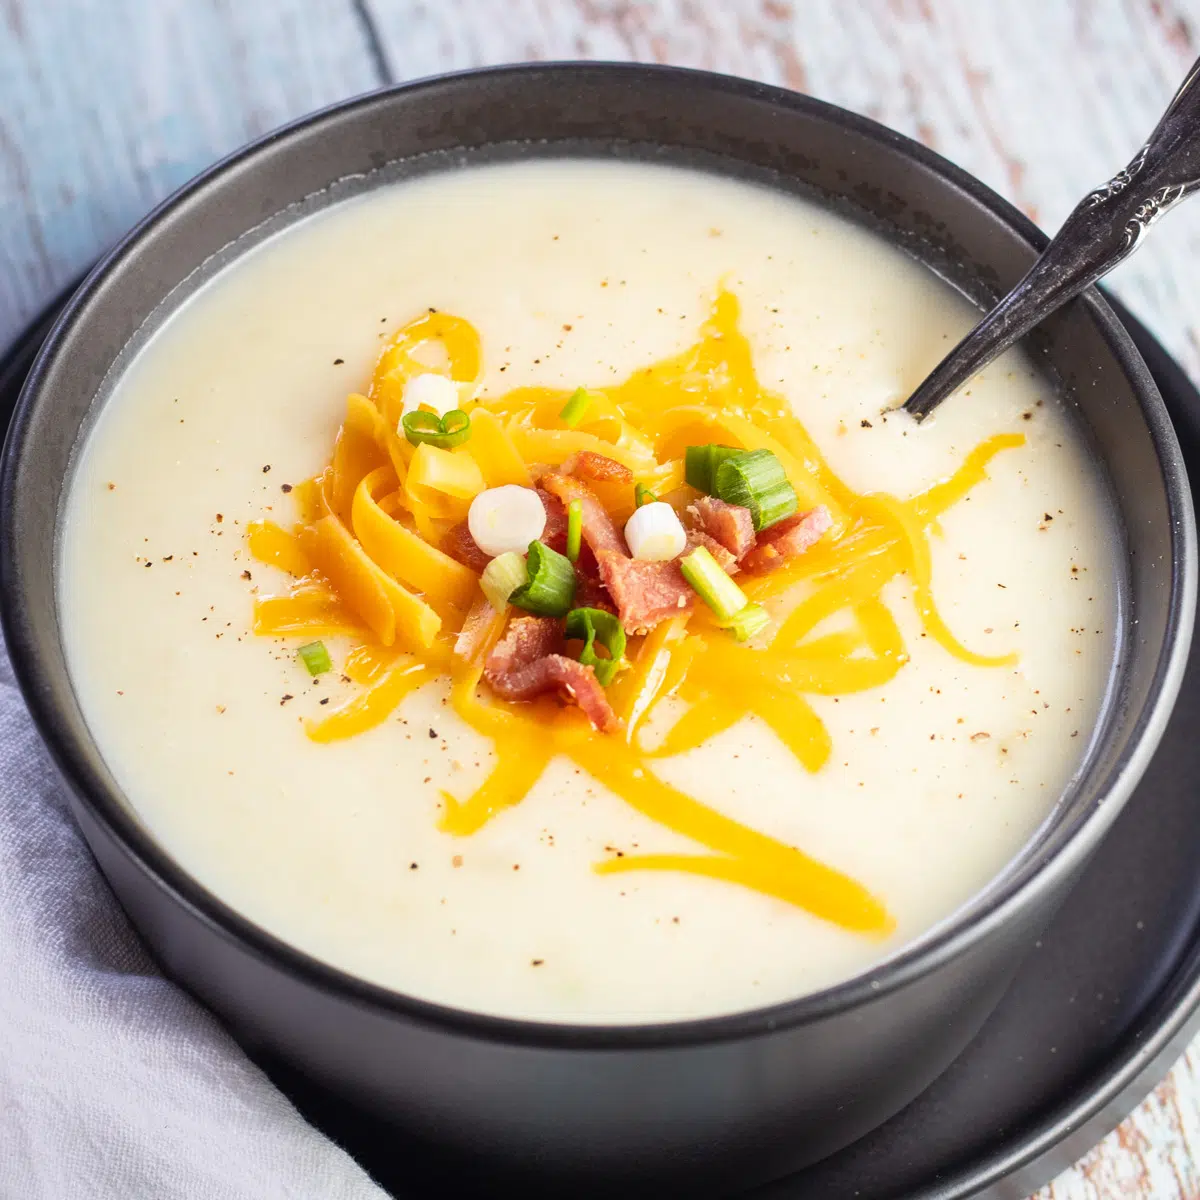 Картофельный суп из 4 ингредиентов, подается с тертым сыром чеддер, хрустящим беконом и нарезанным зеленым луком.